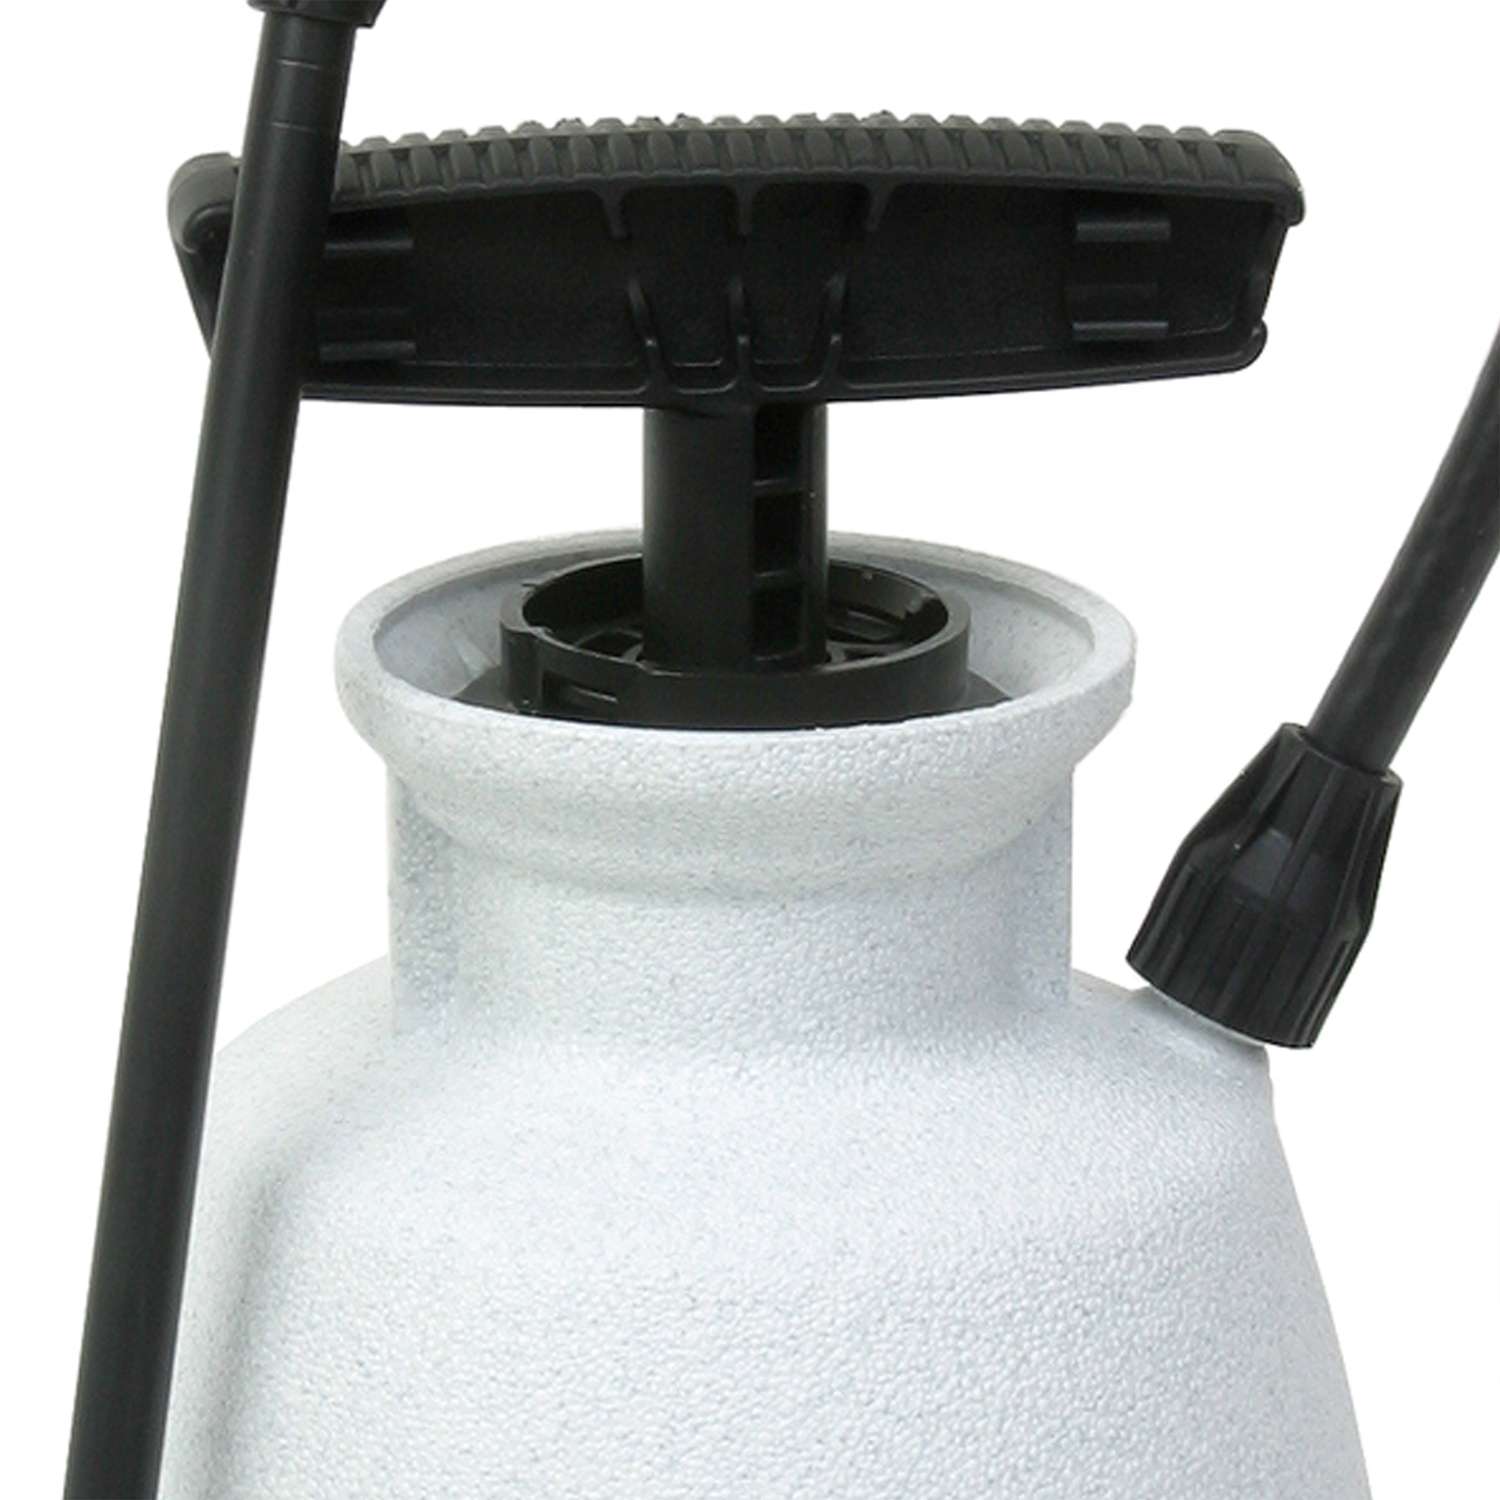 Hand Held Garden Sprayer Pump Pressure Water Sprayer 2 Liter Half Gallon  for Lawn, Garden, Garage, Kitchen with Adjustable Nozzle 1 